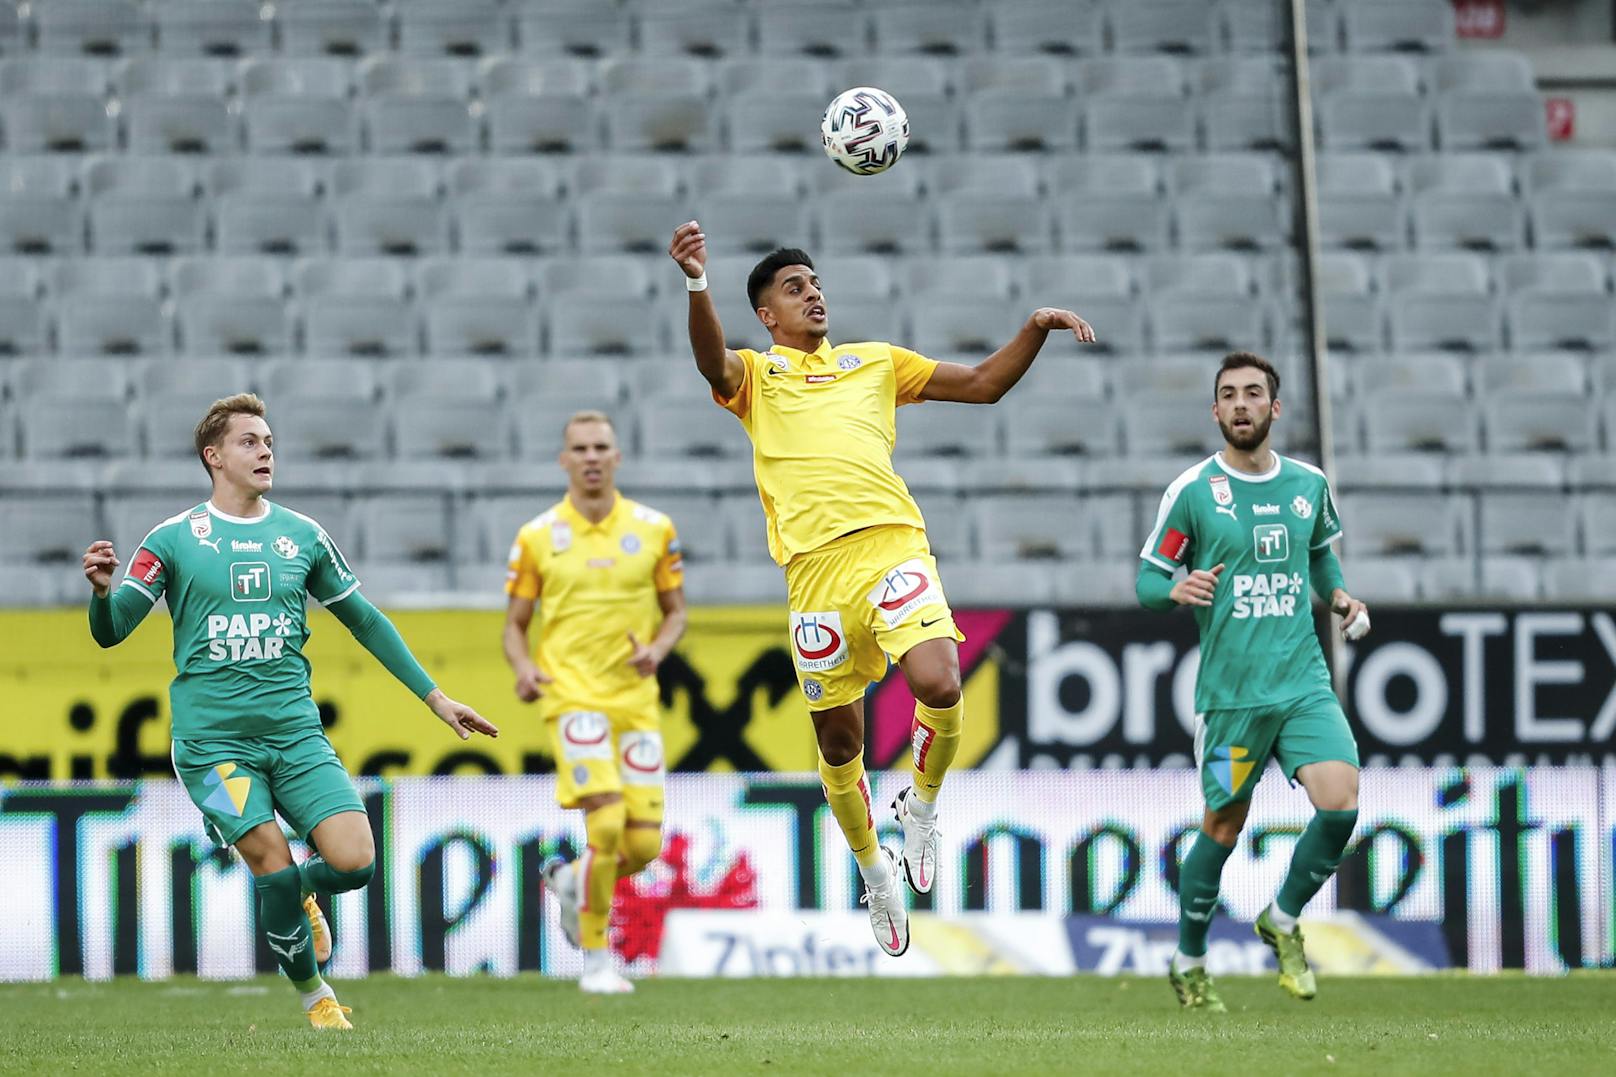 Auswärts gegen Wattens gelang der Austria ein 2:0-Erfolg. Wimmer und Sarkaria trafen in den gelben Auswärtstrikots.